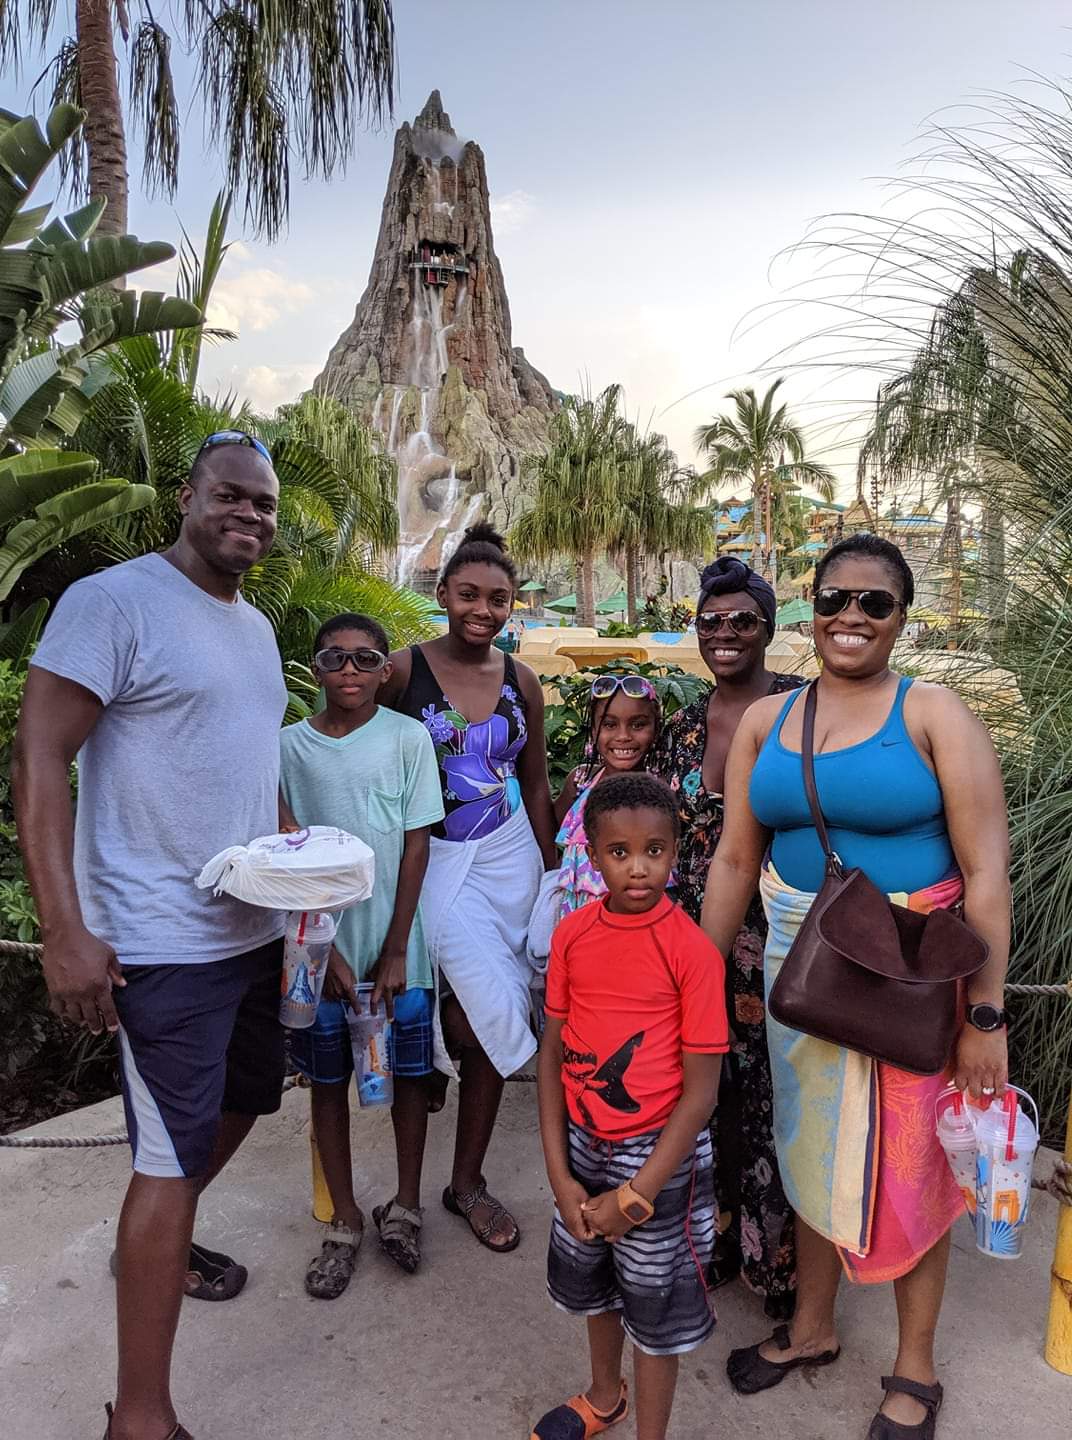 Universal Orlando Volcano Bay 2019 Family vacation...